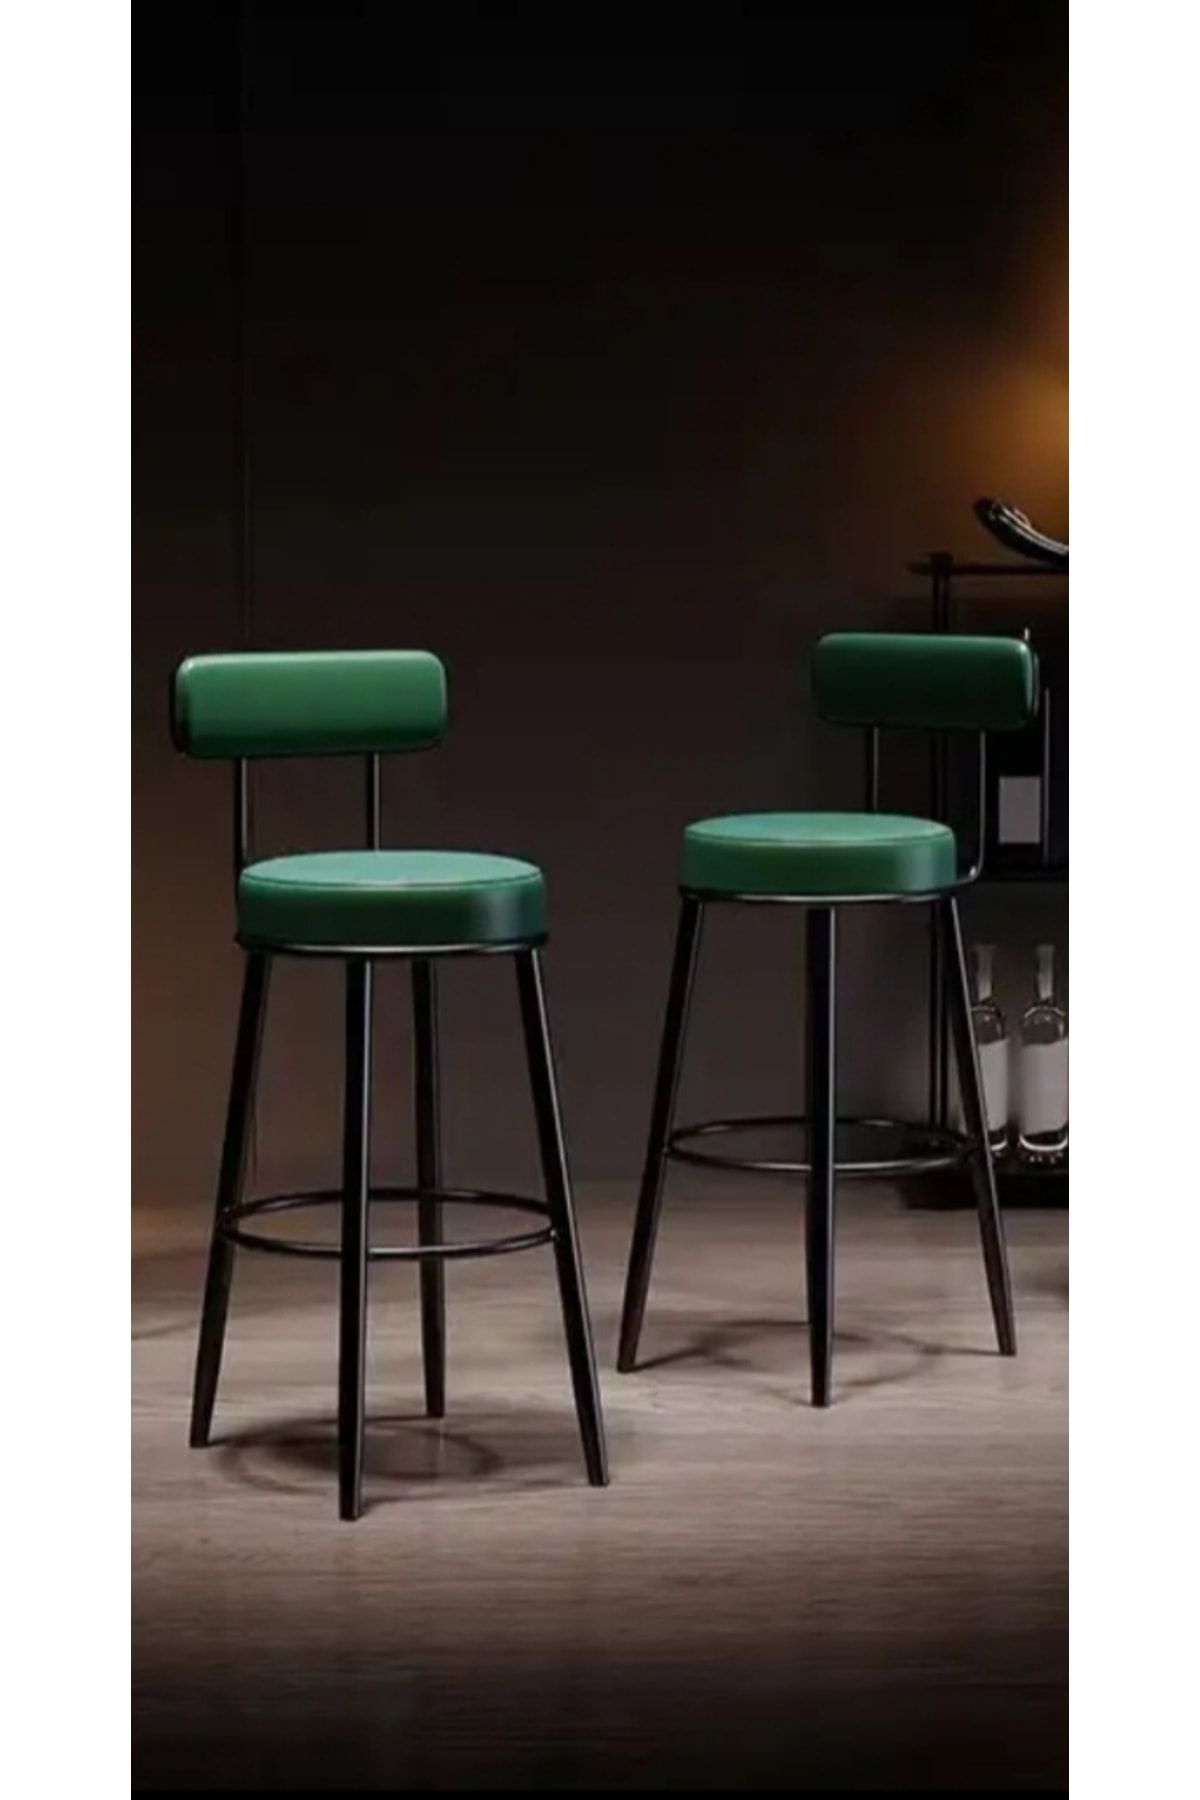 J&S QUALİTY Montaj Gerektirmez Hazır Bar Sandalyesi Ikea Tasarımı Mutfak Adası Bar Taburesi Yeni Tasarım 75 Cm